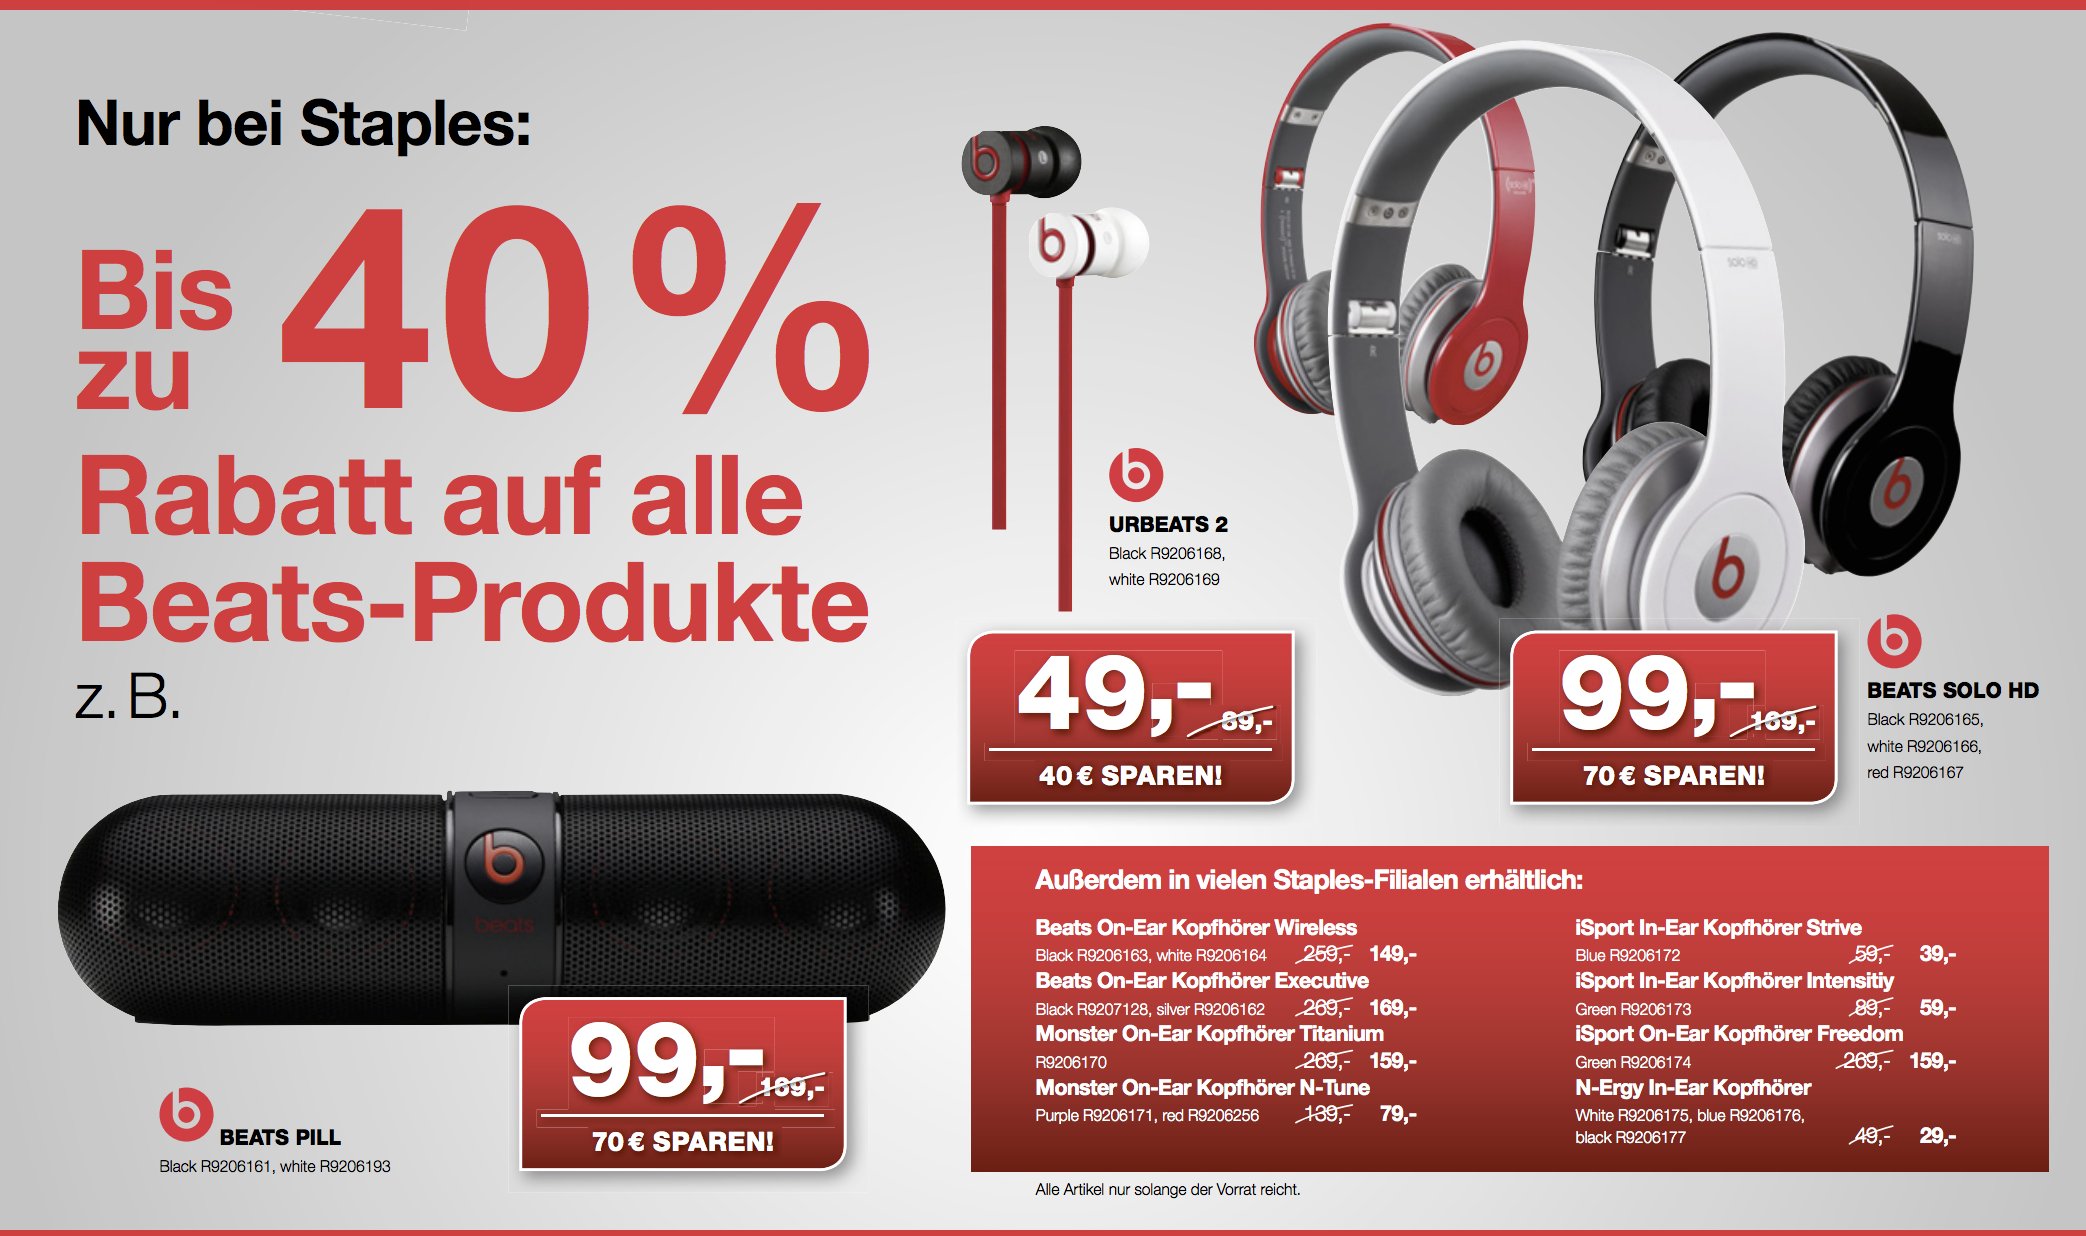 Beats bei Amazon ausverkauft - Staples mit 40 Prozent Rabatt auf alle Beats Produkte. 1